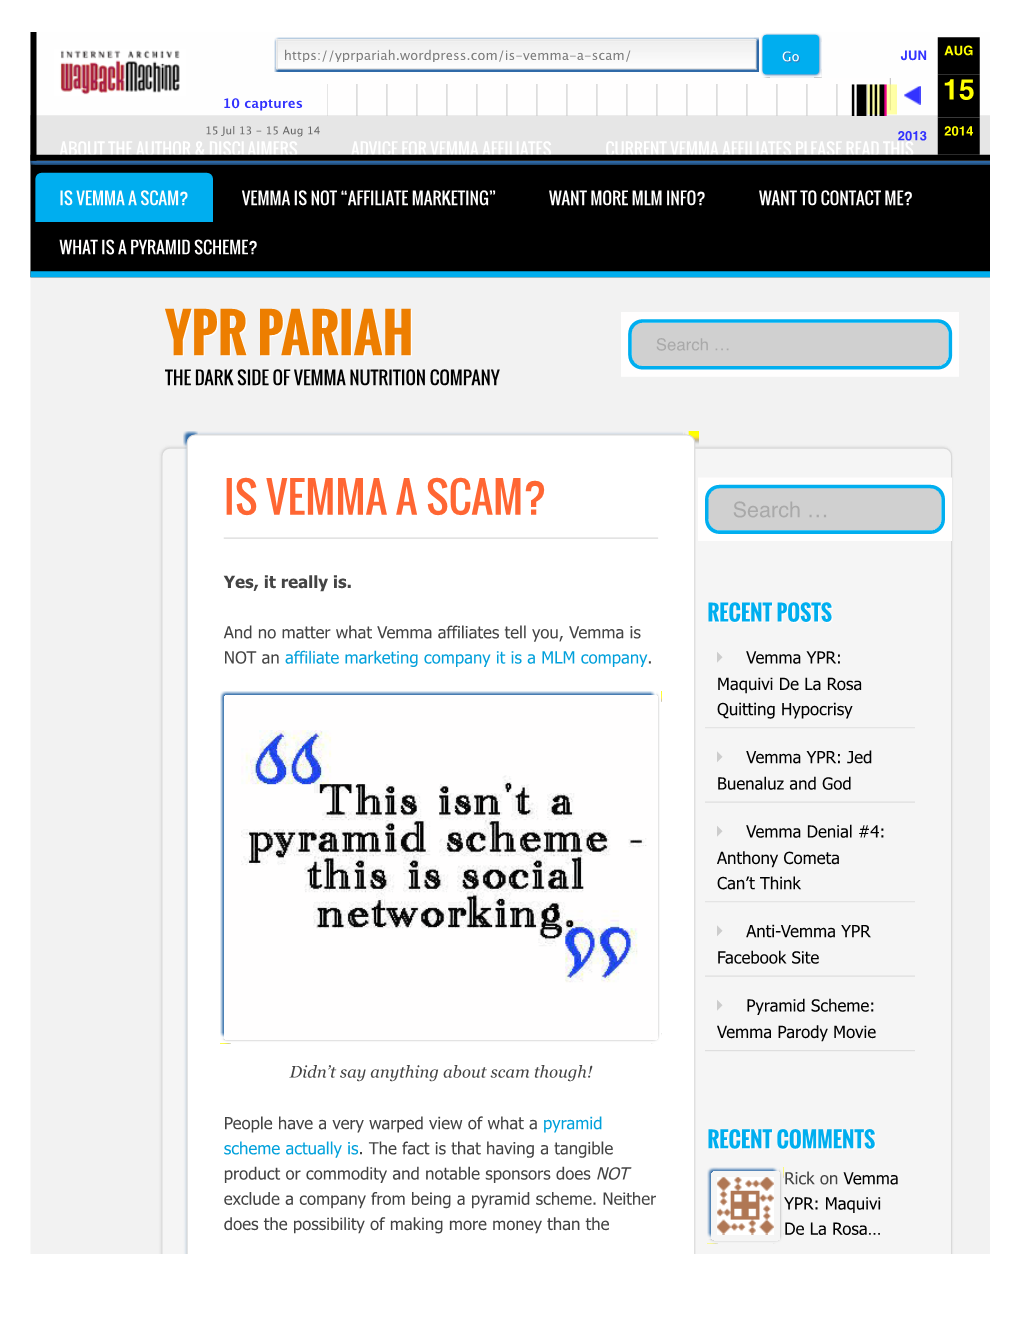 YPR Pariah | Is Vemma a Scam?